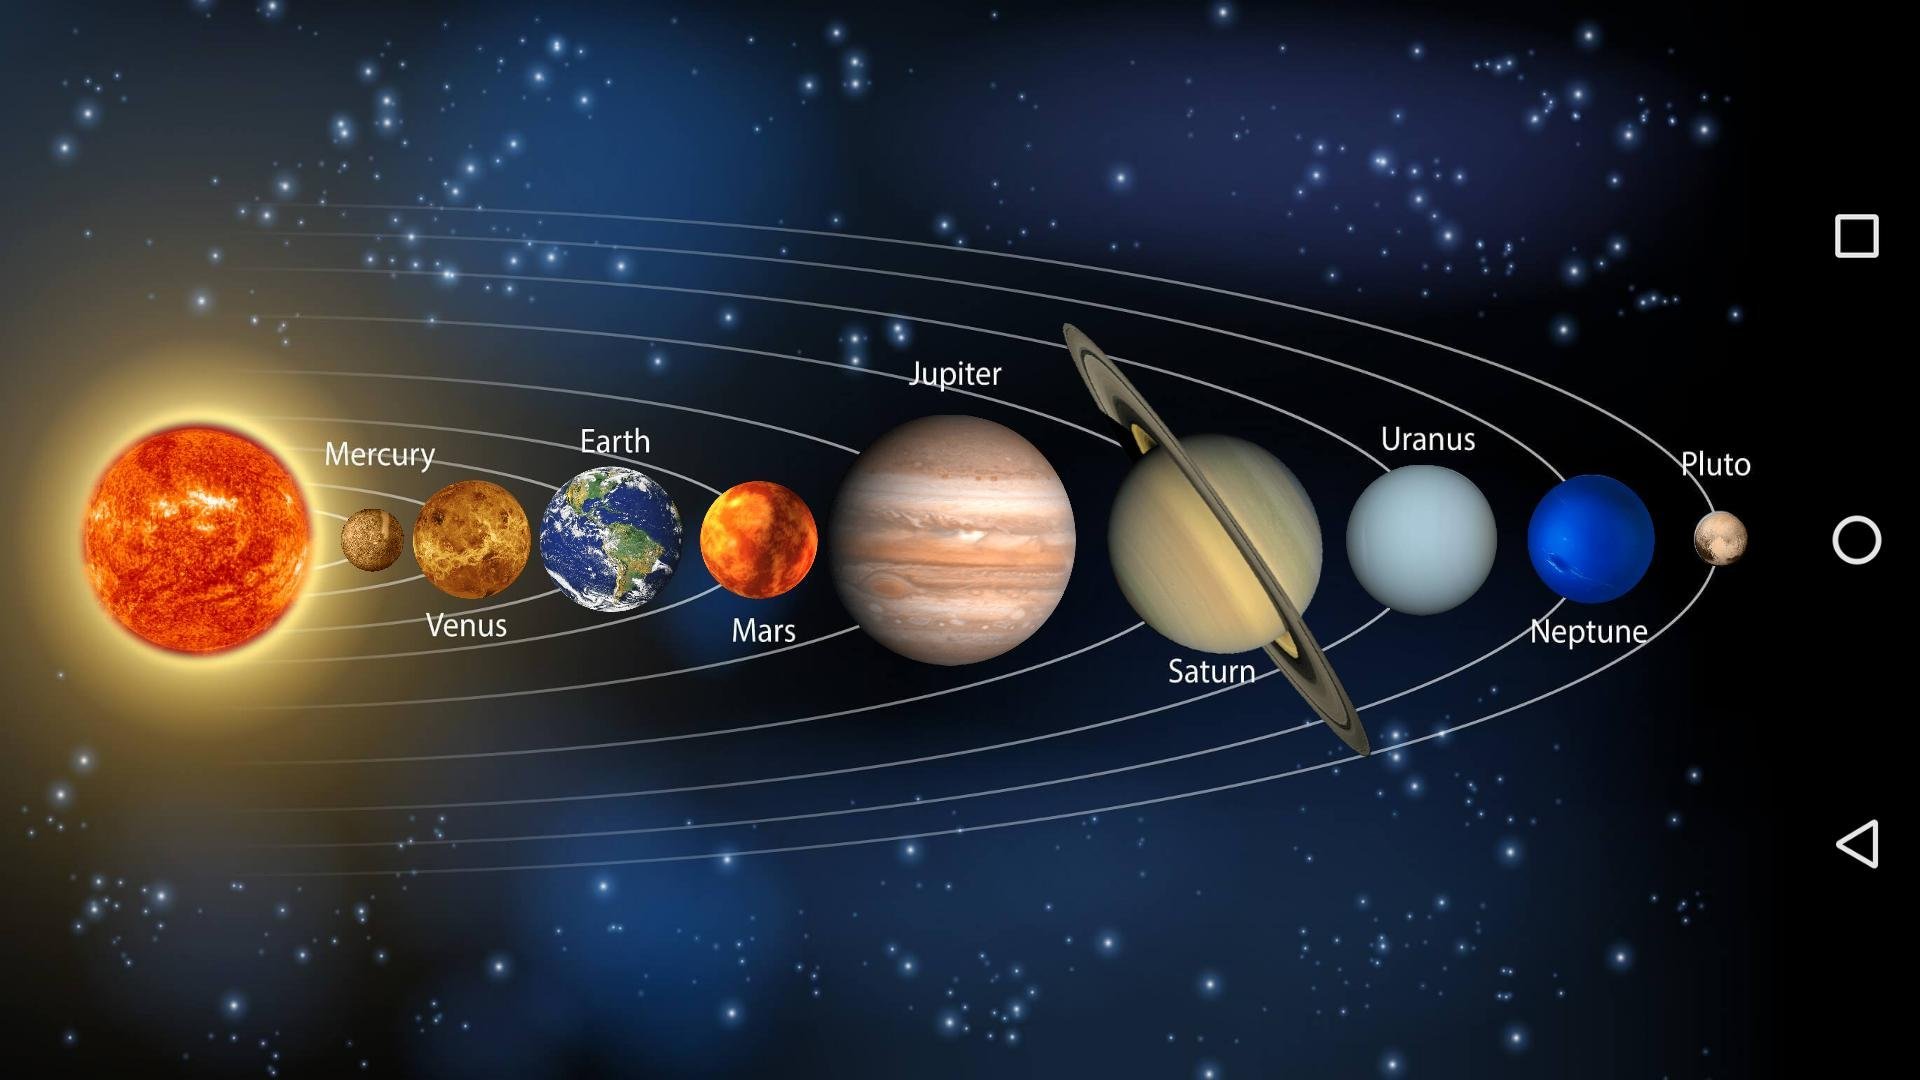 Картинка планеты солнечной системы по порядку. Расположение планет солнечной системы по порядку. Солнечная система Планетная система. Солнечная система с названиями планет по порядку от солнца. 9 Планет солнечной системы по порядку.